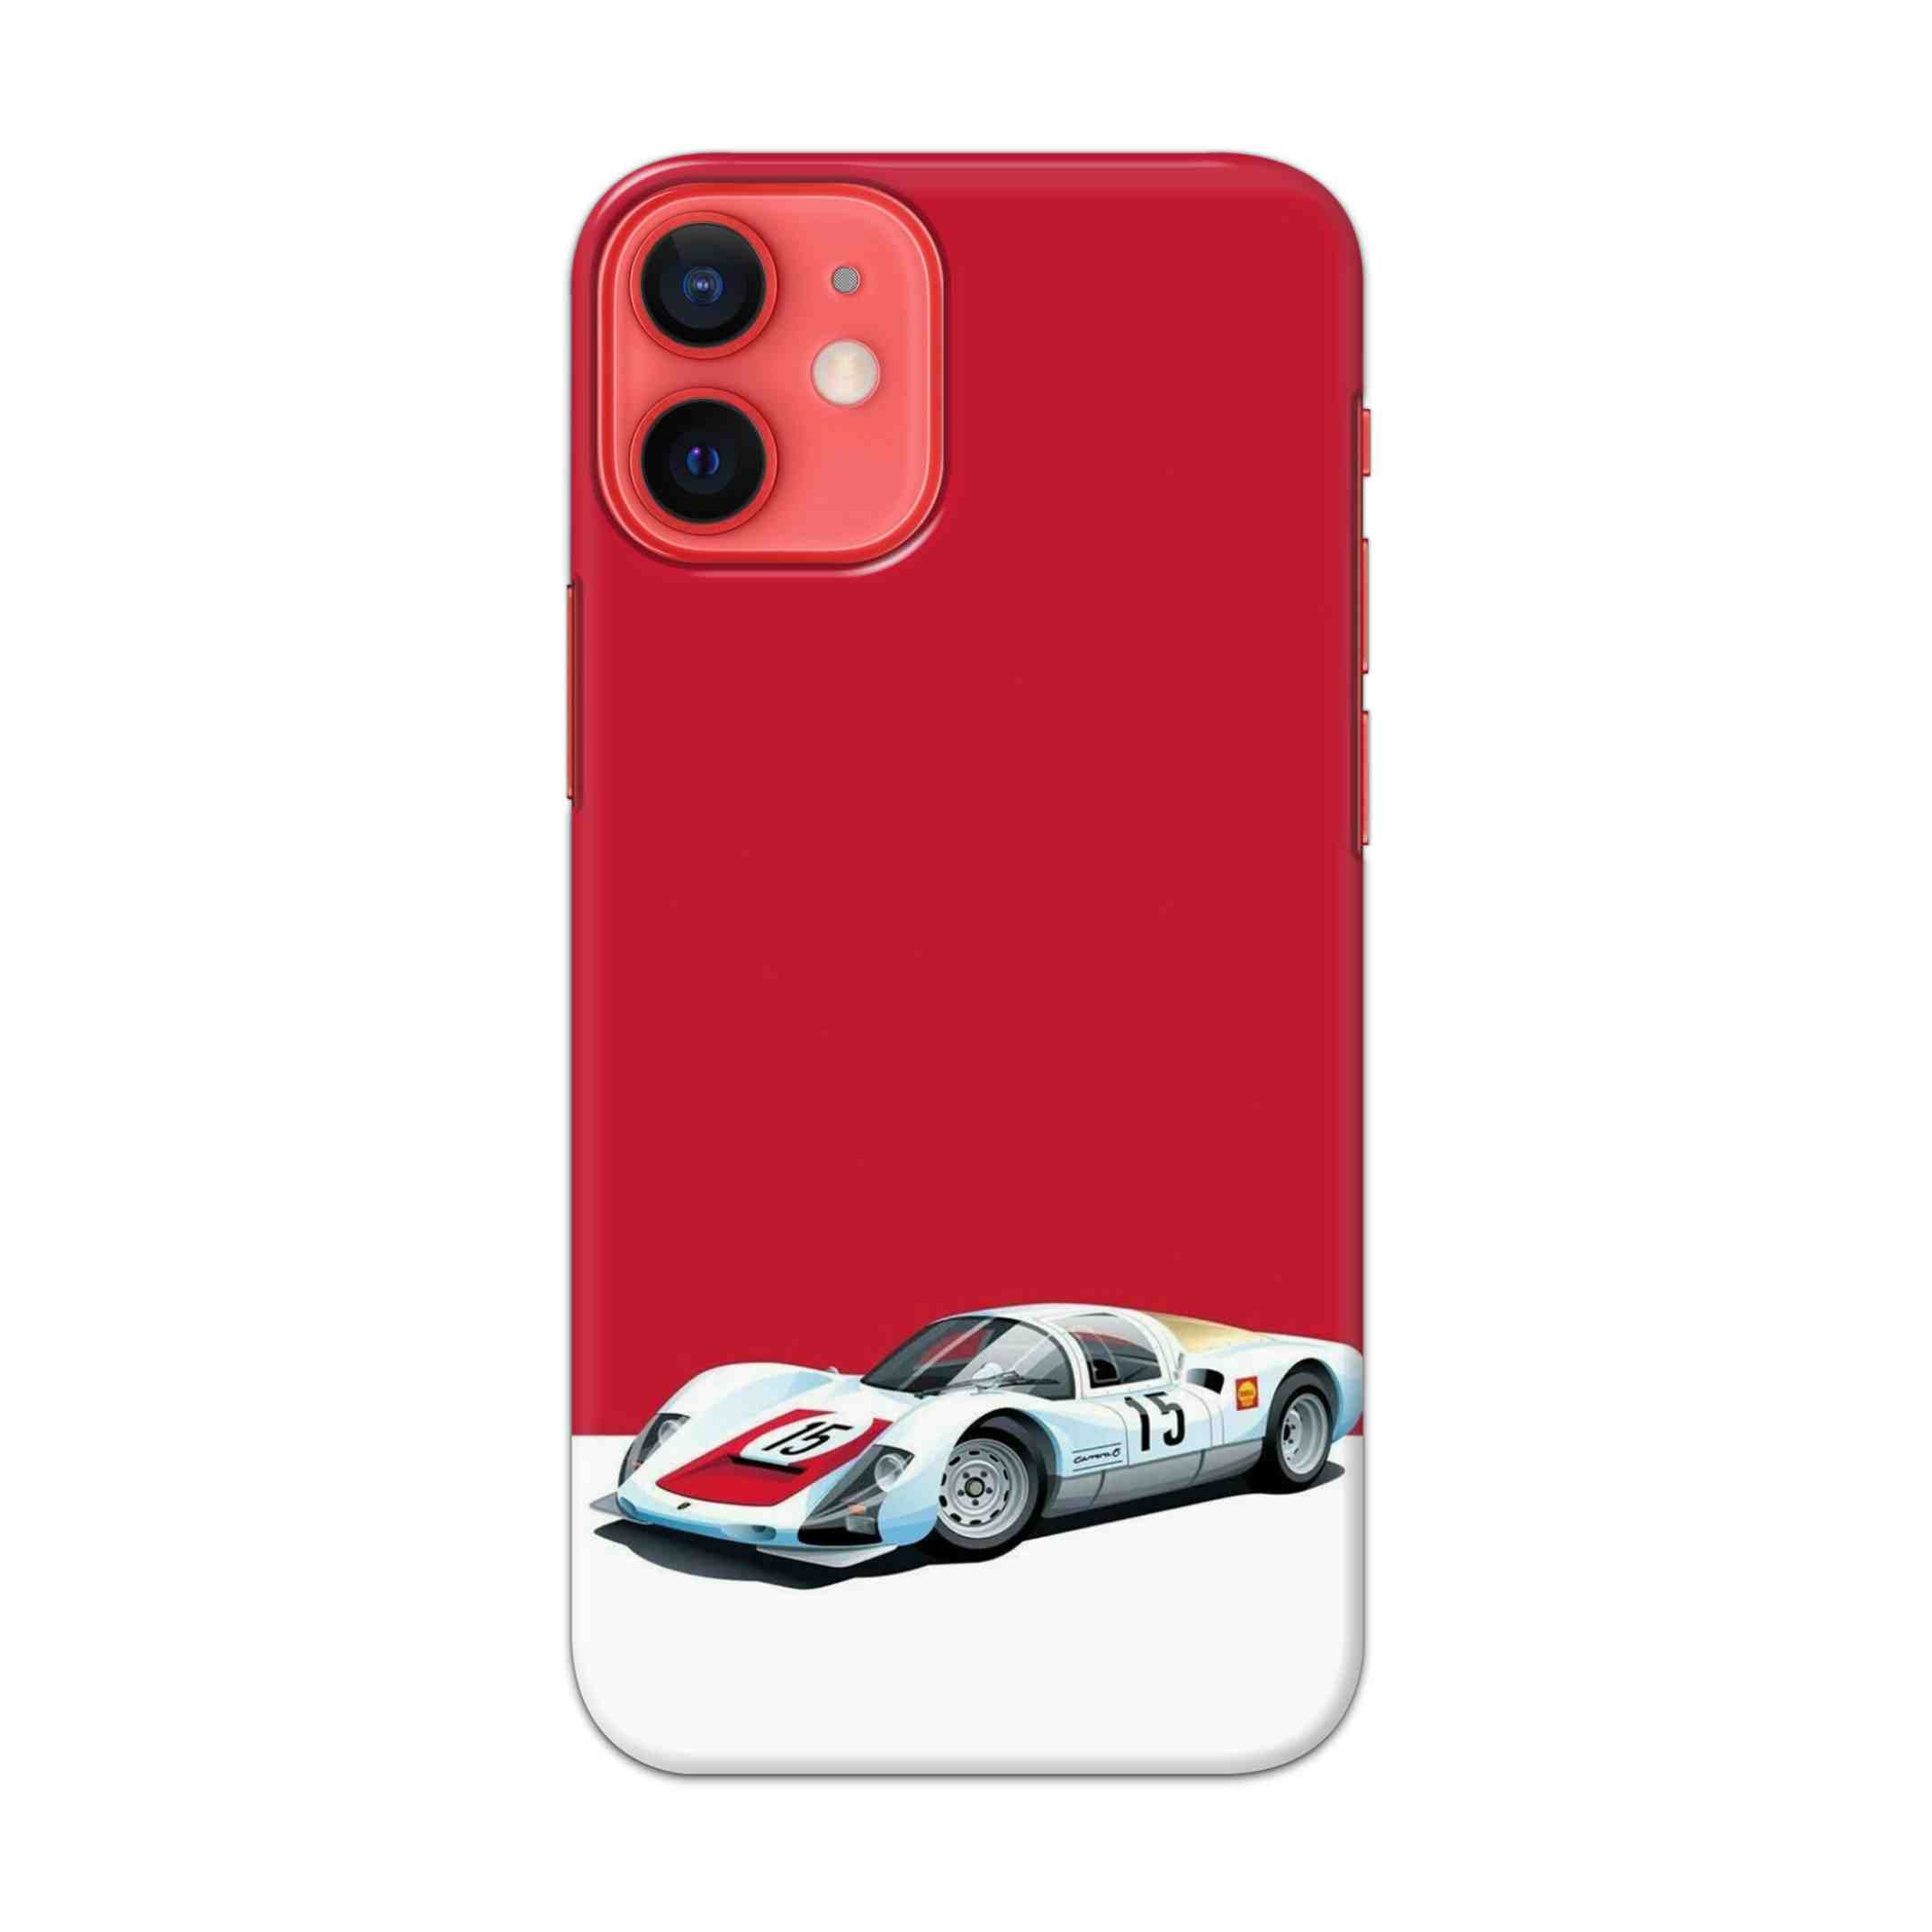 Buy Ferrari F15 Hard Back Mobile Phone Case/Cover For Apple iPhone 12 mini Online